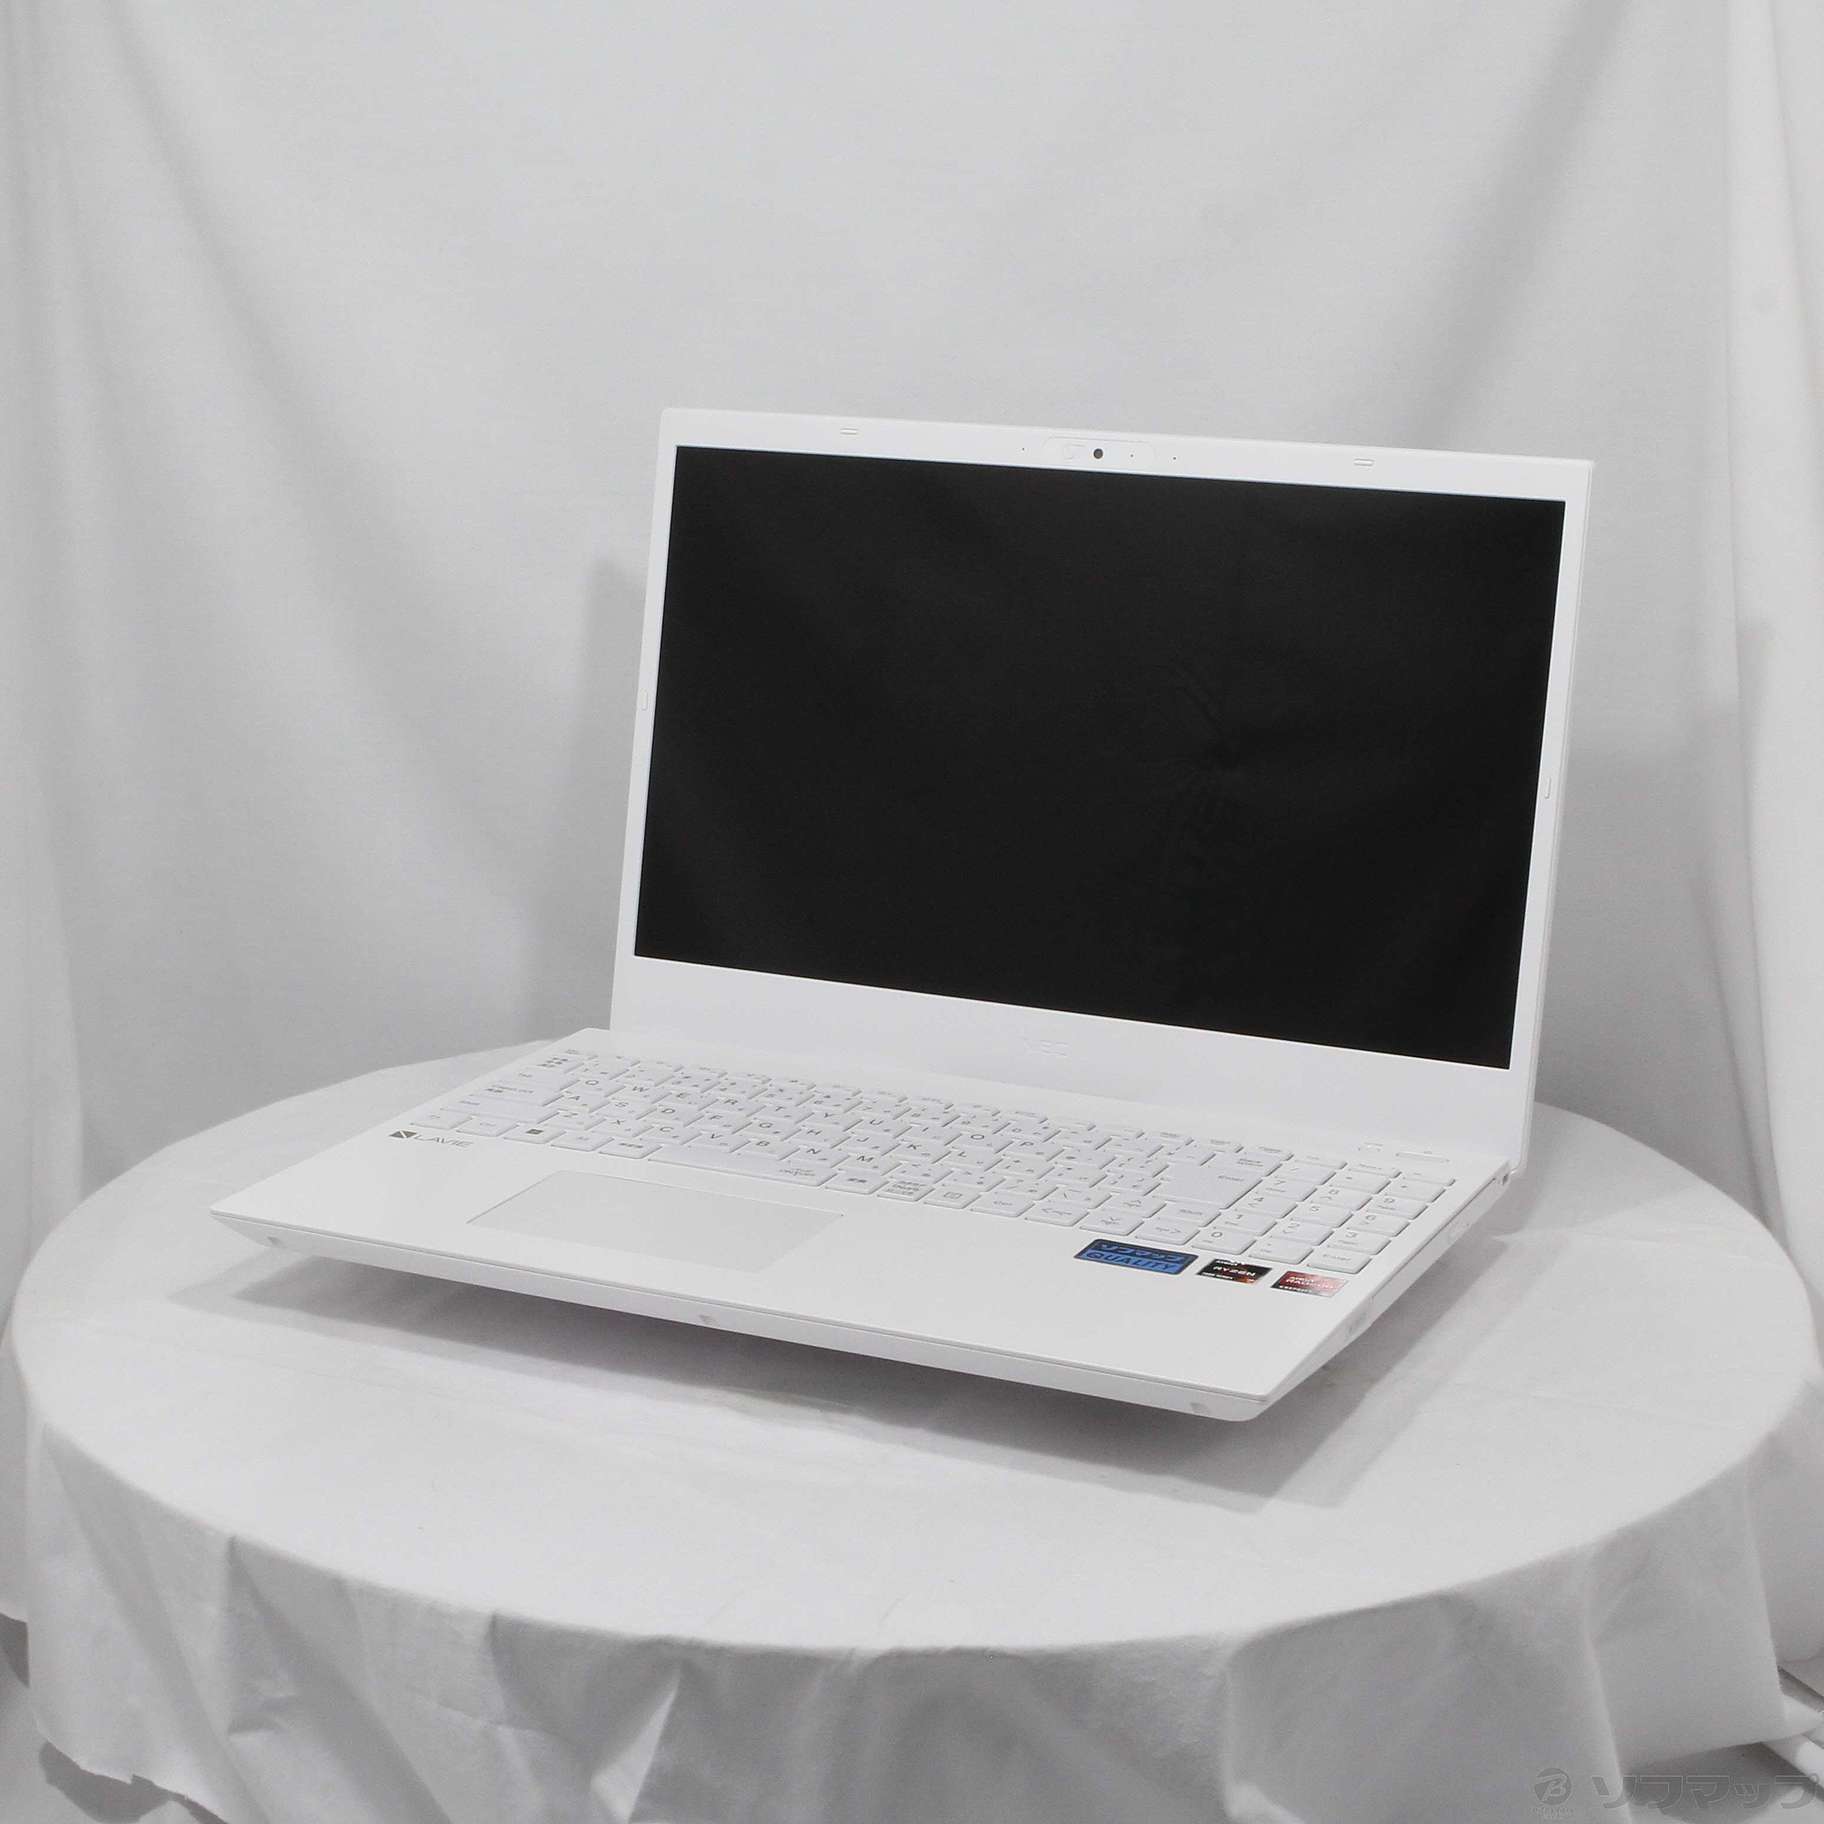 【2747】★新品未開封★NEC パソコン LAVIE N1565 ホワイト